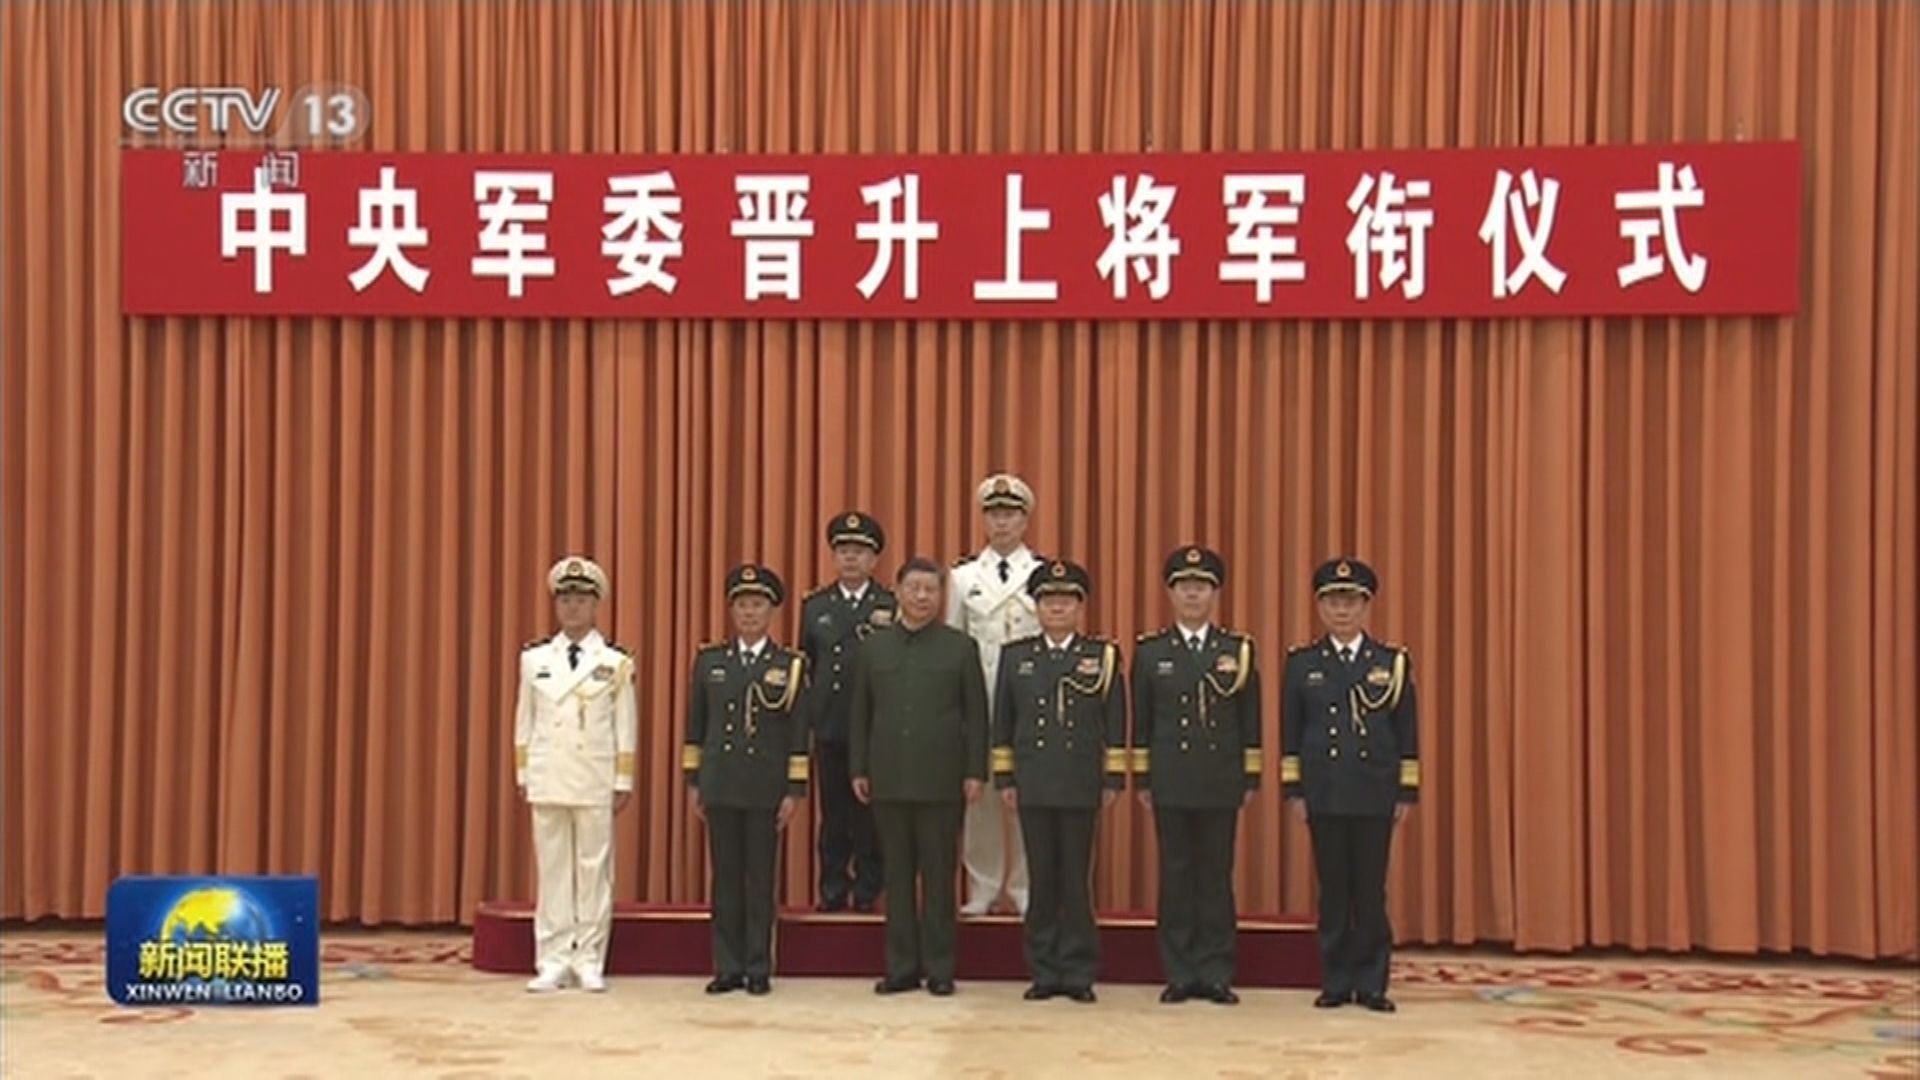 習近平出席中央軍委晉陞上將軍銜儀式 | Now 新聞